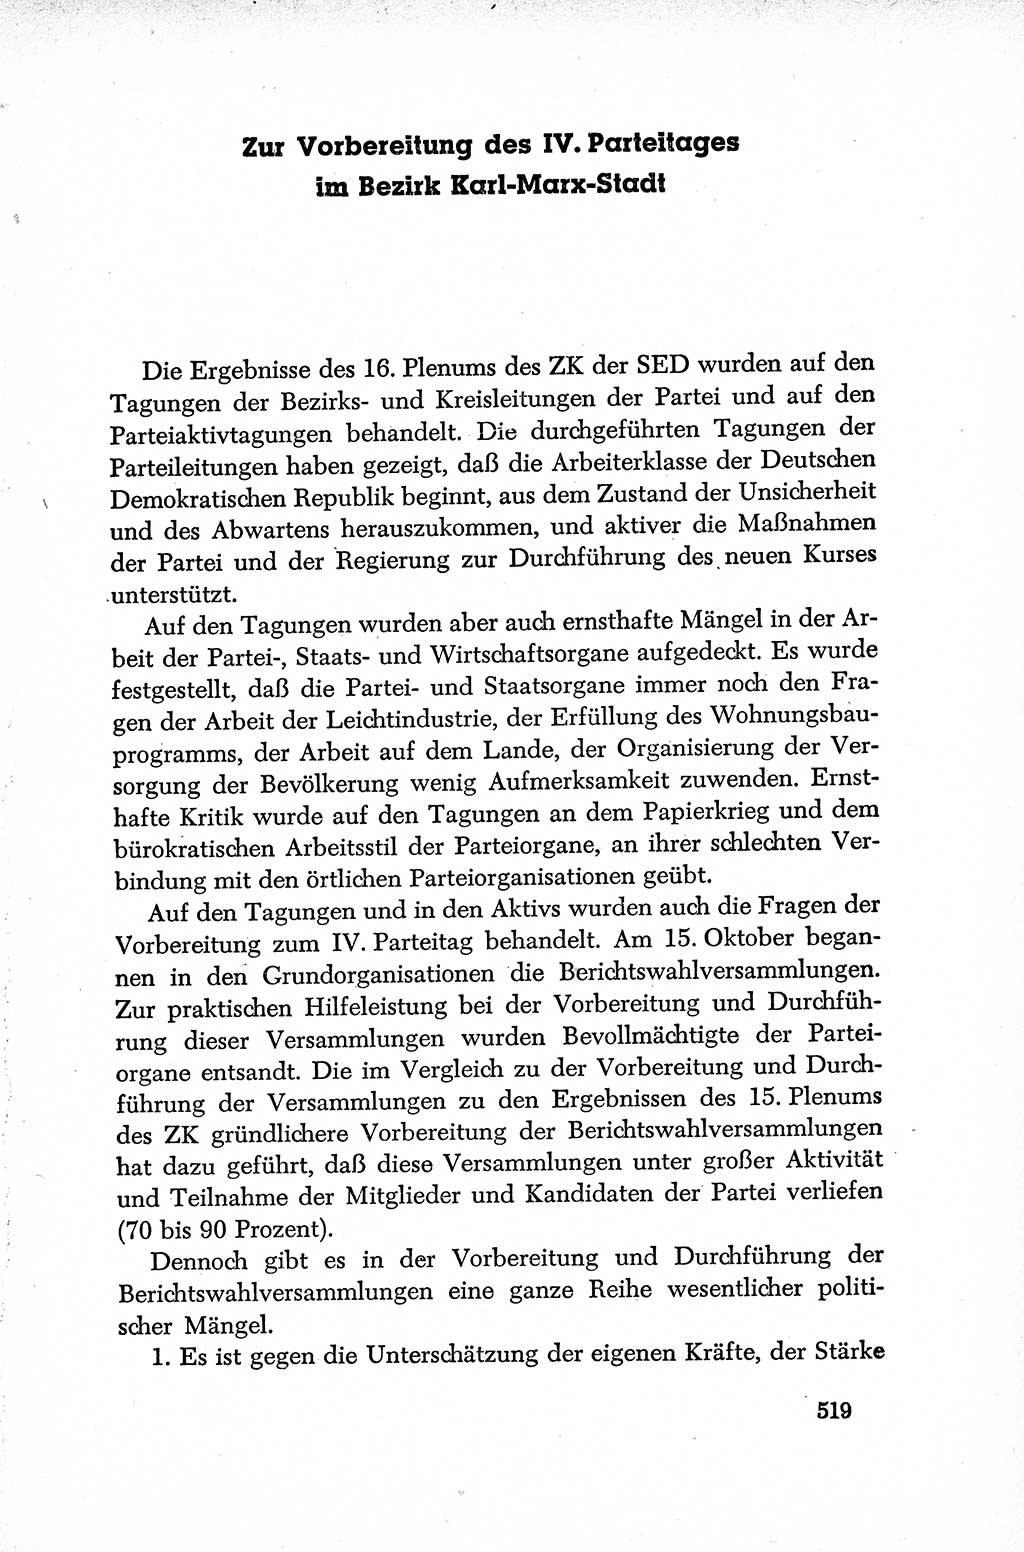 Dokumente der Sozialistischen Einheitspartei Deutschlands (SED) [Deutsche Demokratische Republik (DDR)] 1952-1953, Seite 519 (Dok. SED DDR 1952-1953, S. 519)